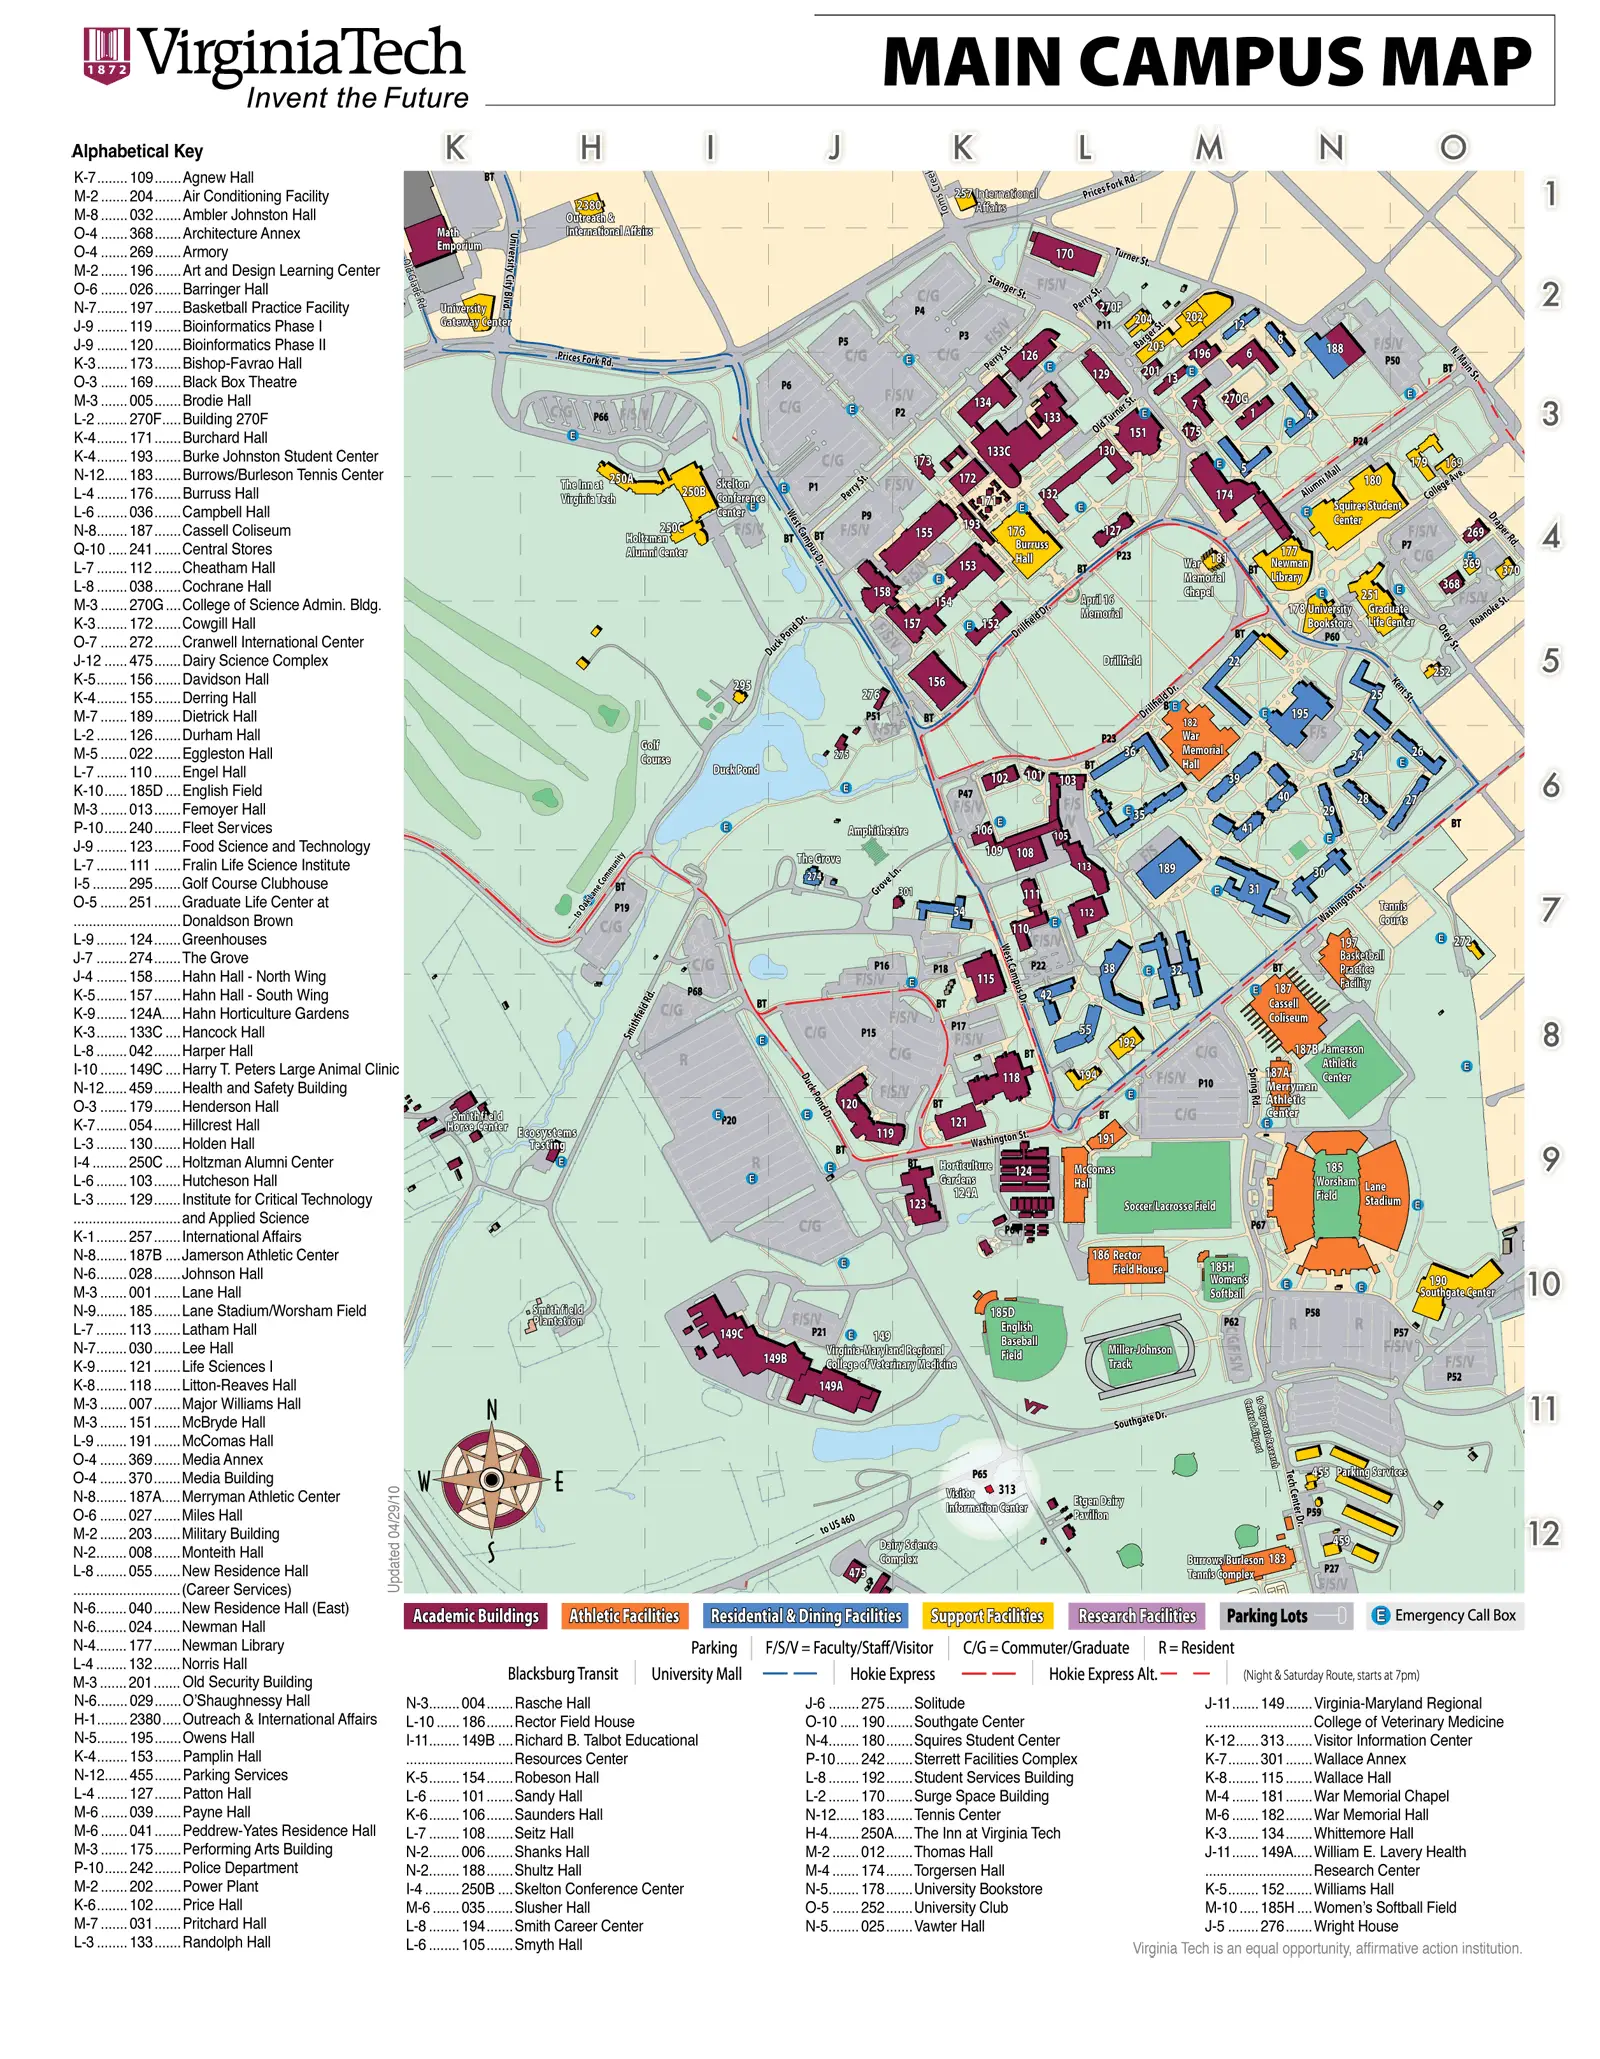 Virginiatech Campus Map - MapSof.net